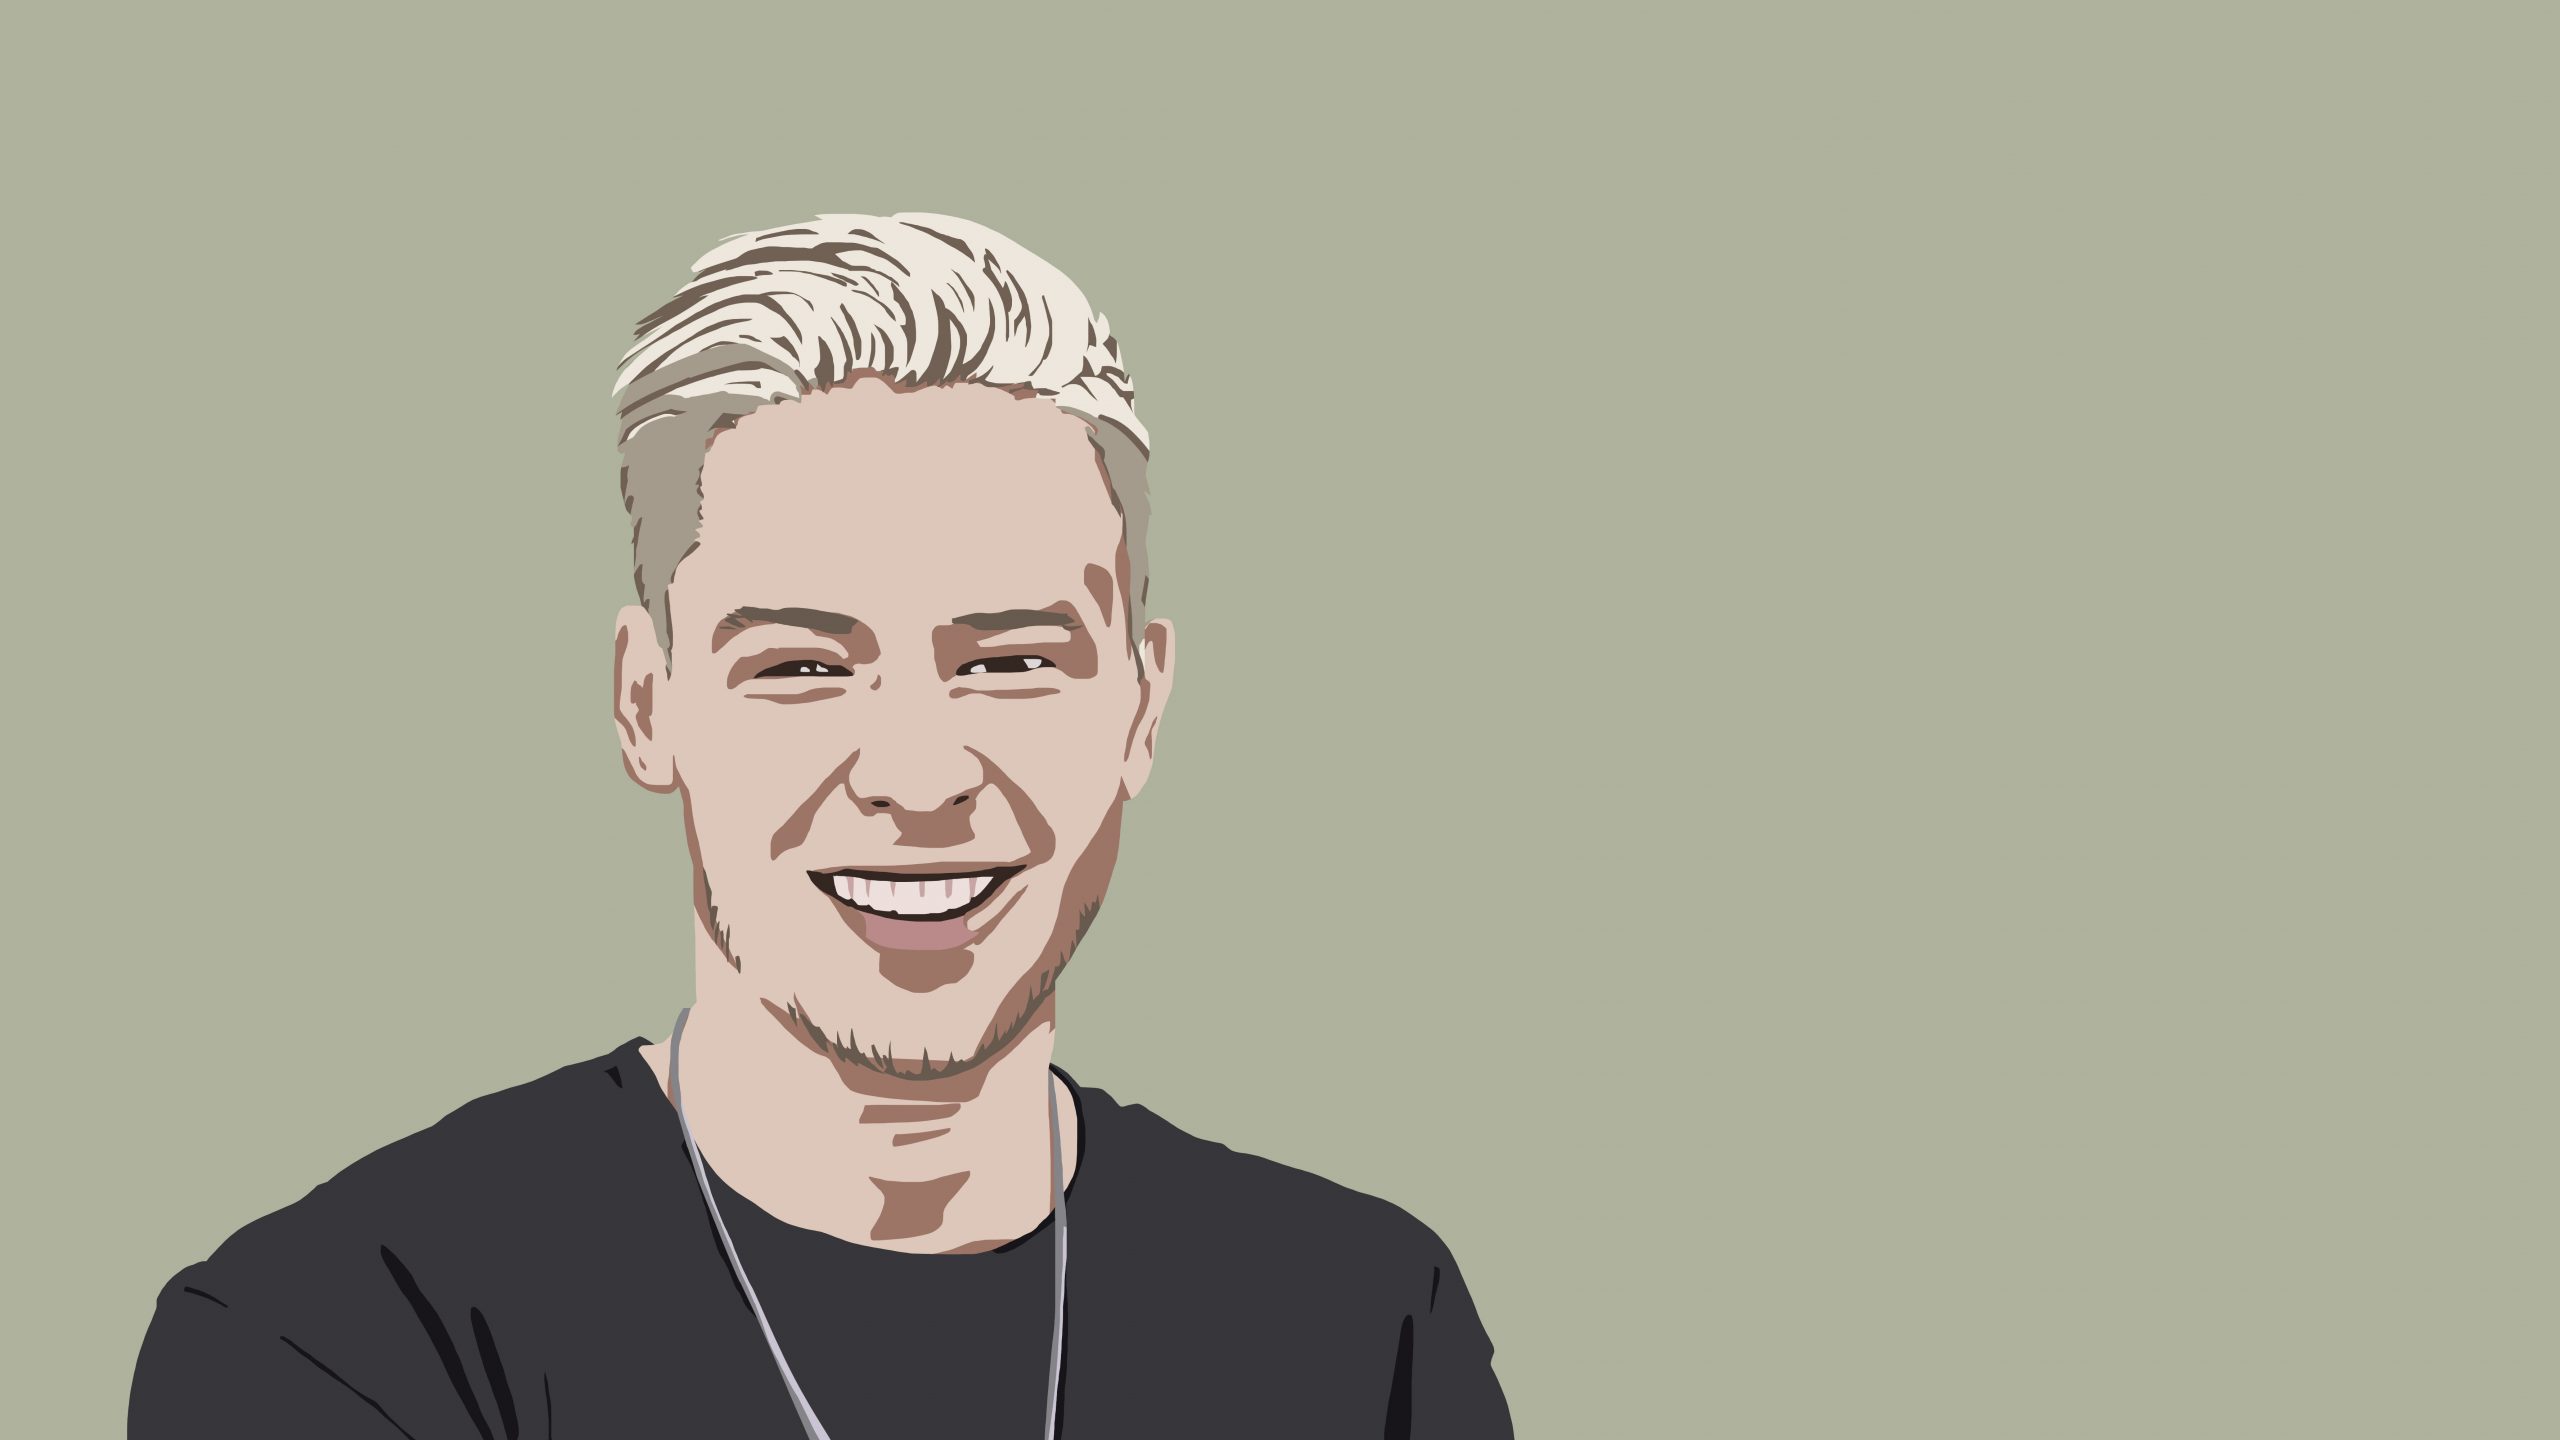 Zeichnung eines lächelnden Mannes mit blonden Haaren. Die Zeichnung bildet den YouTuber "Rewinside" ab.